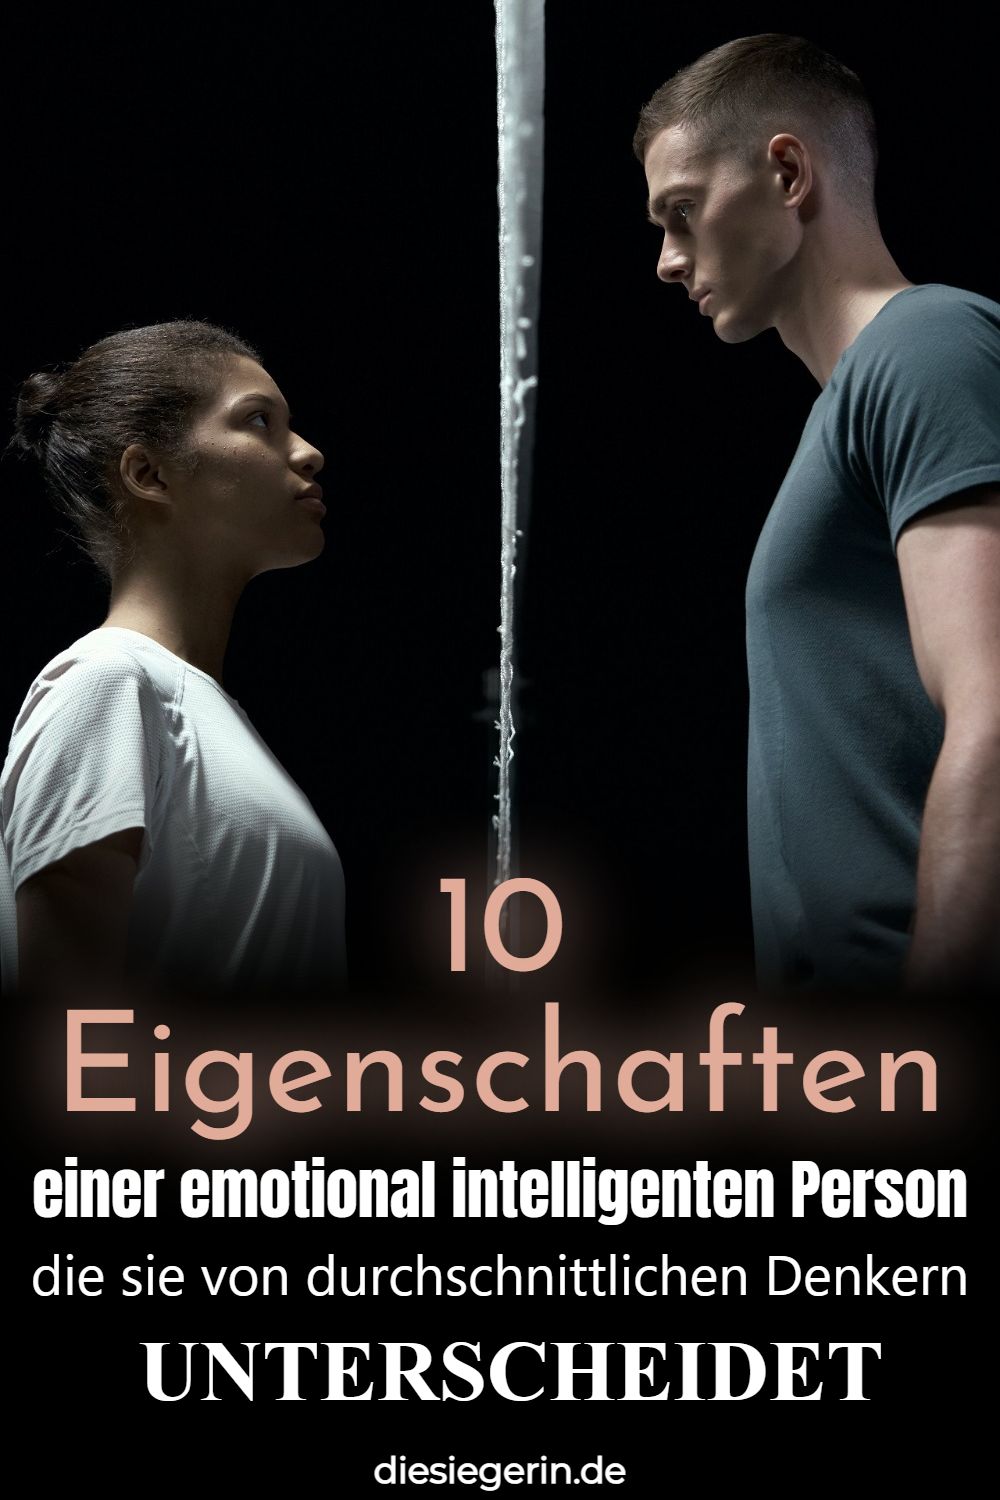 10 Eigenschaften einer emotional intelligenten Person die sie von durchschnittlichen Denkern UNTERSCHEIDET